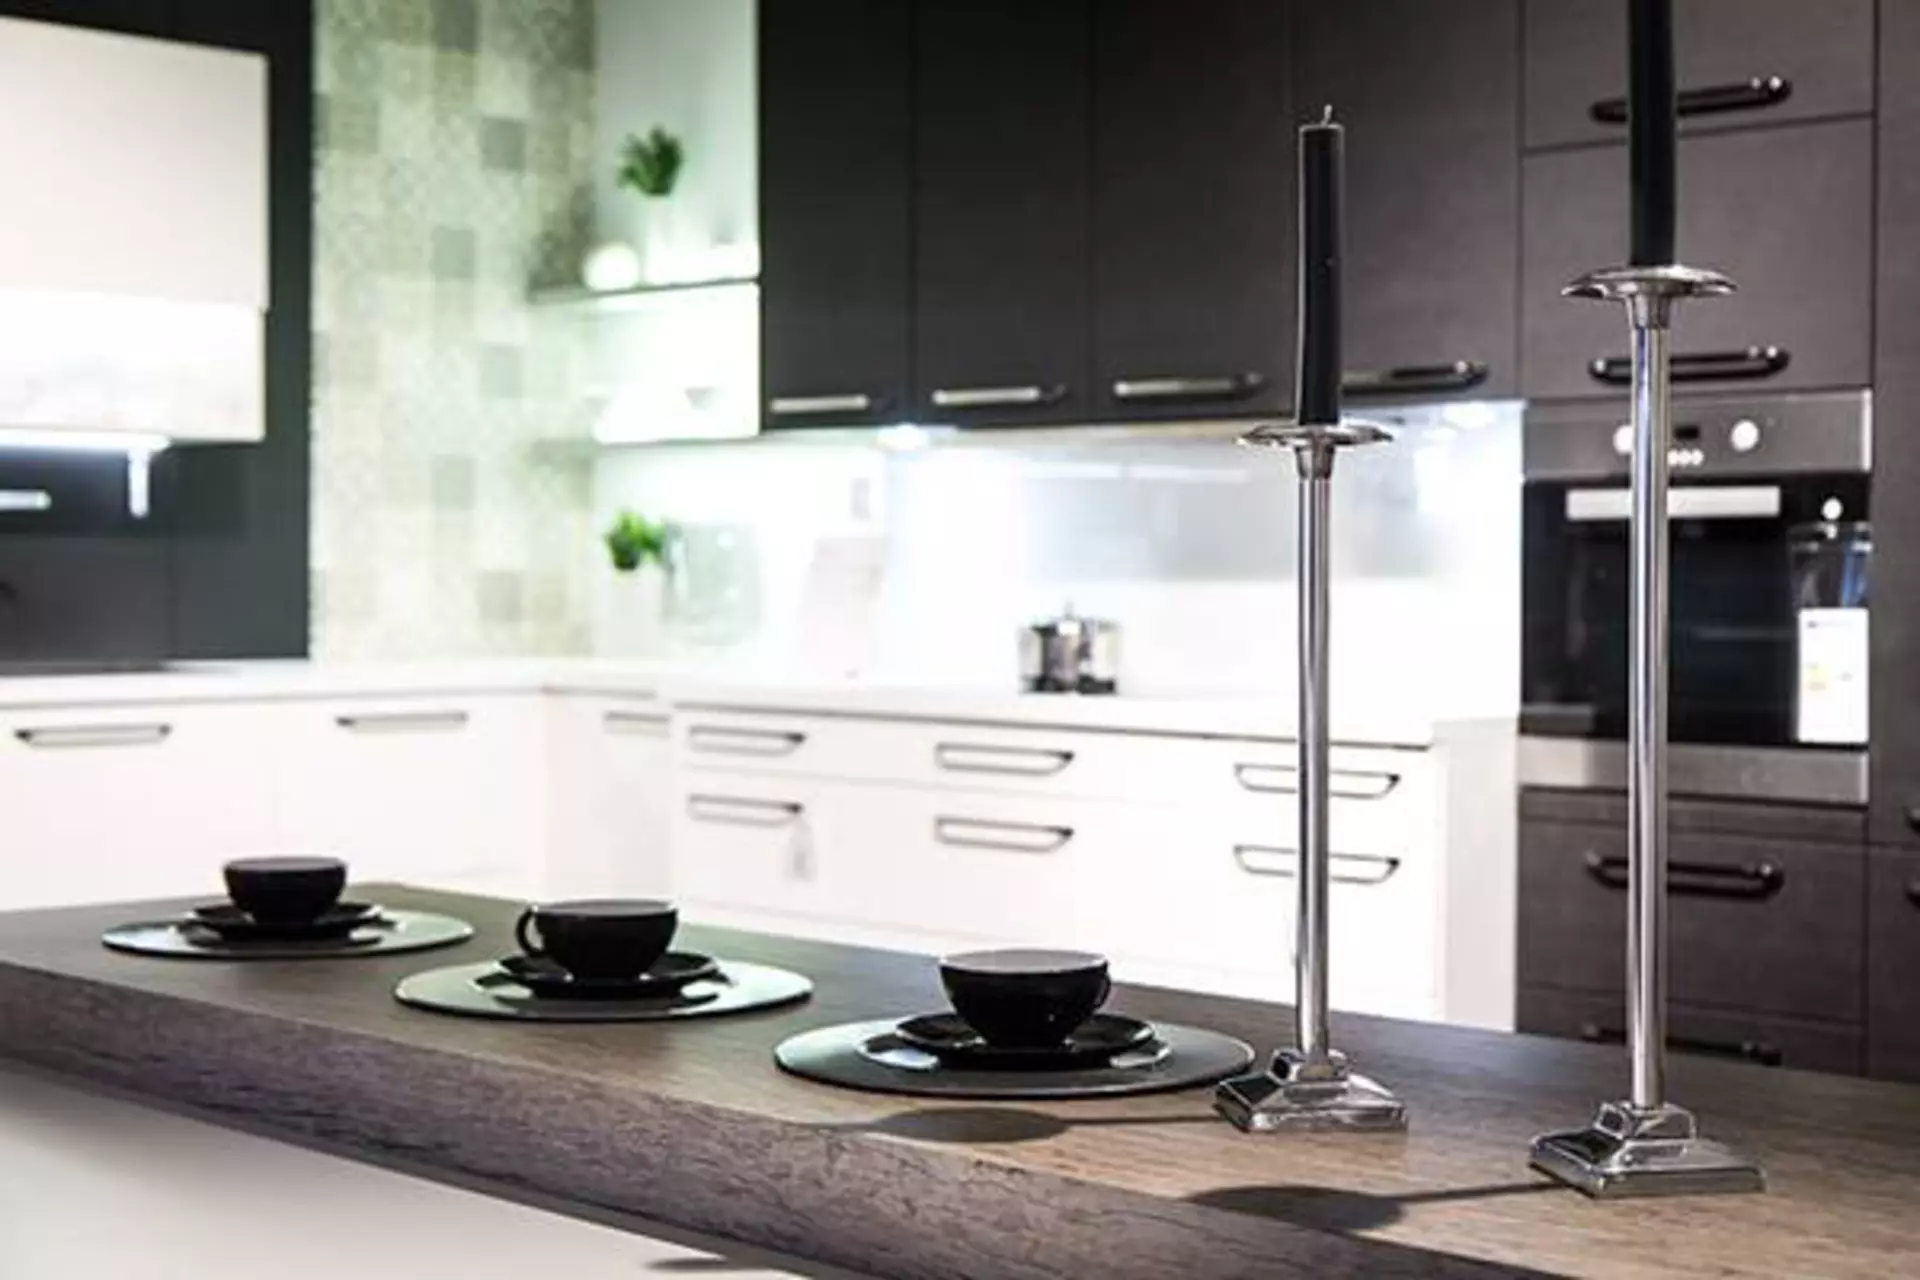 Kategoriebild zu Arbeitsplatten in der Küche. Zu sehen ist eine in die Küche integrierte Frühstückstheke mit dicker Arbeitsplatte aus grauem Naturstein.